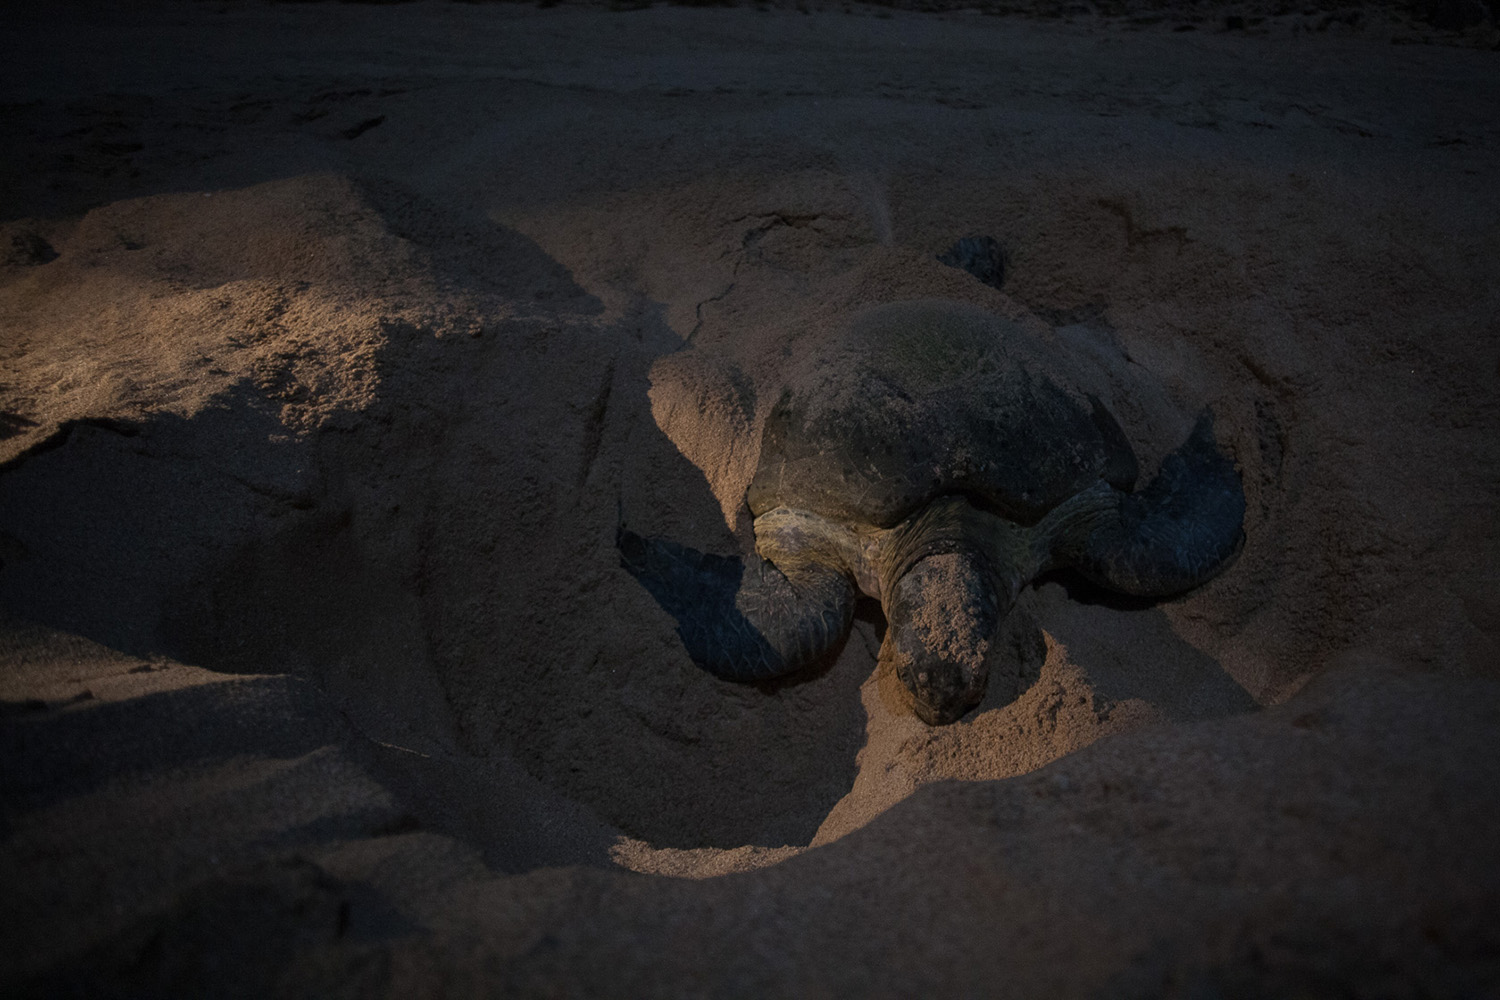 tortue verte entrain de pondre ses oeufs, à Oman, pendant un voyage photo